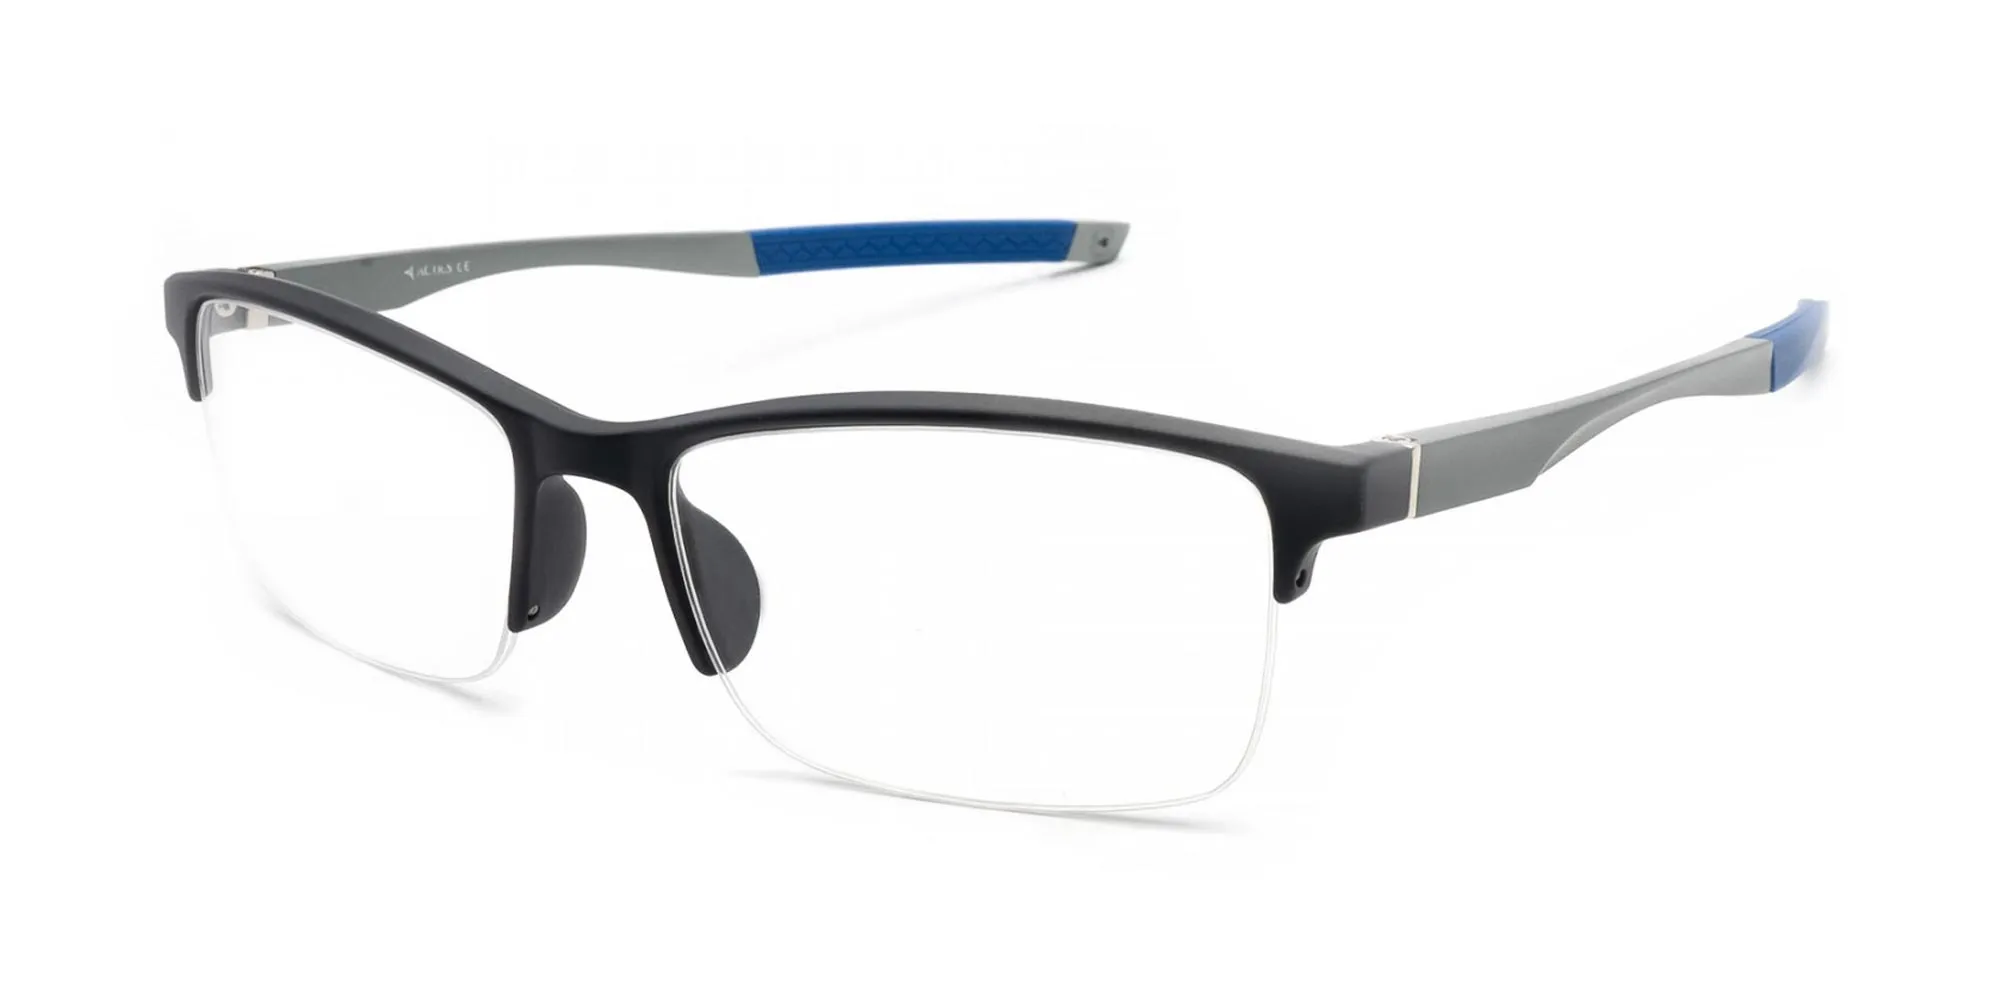 Prescription Safety Glasses | Safety Sunglasses | Rx-Safety